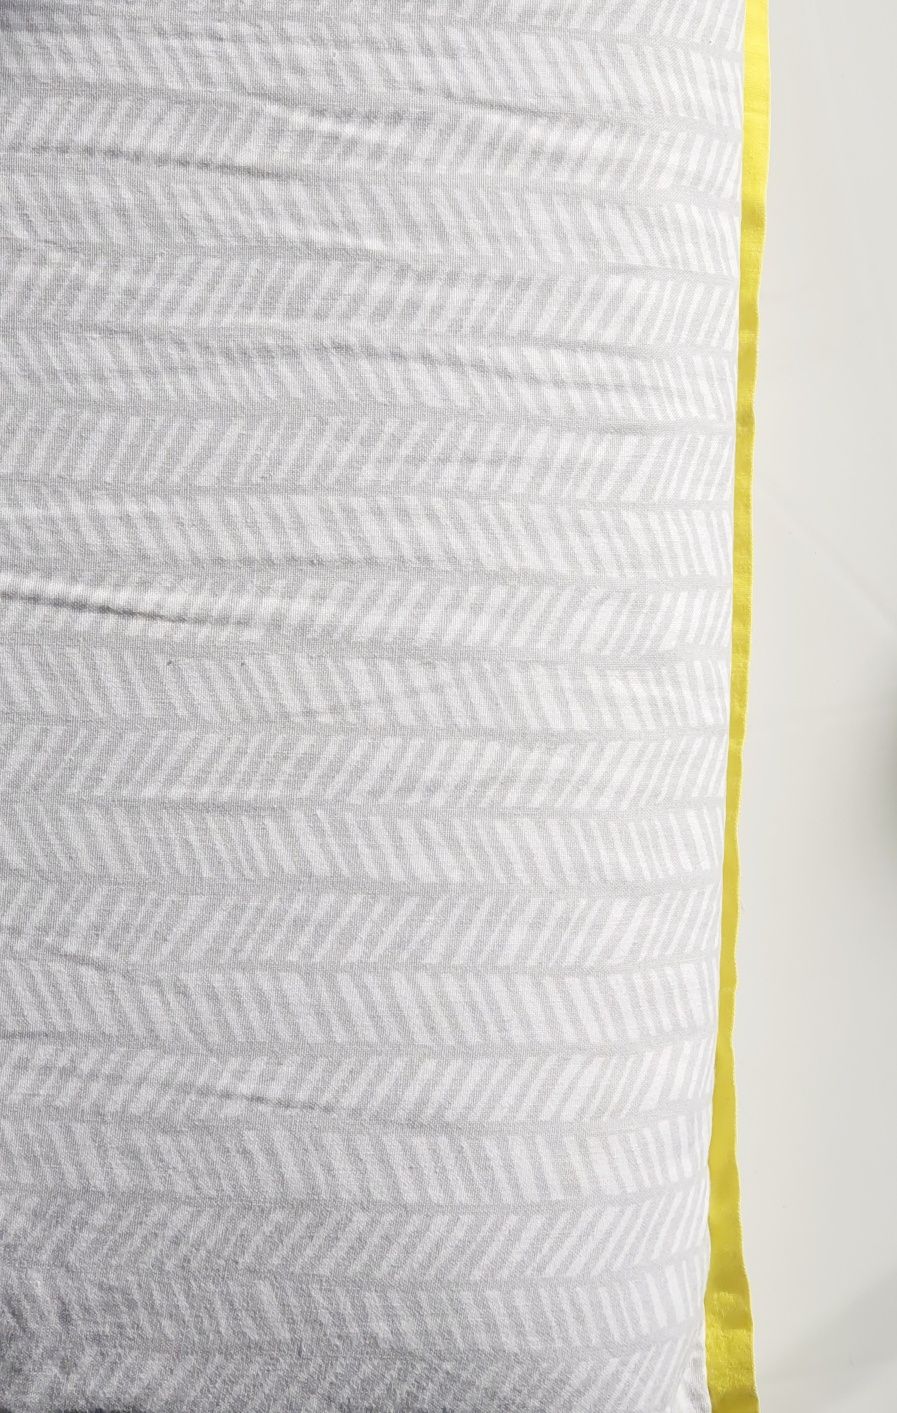 Lenjerie patut, Ikea, 110×125 cm, bumbac